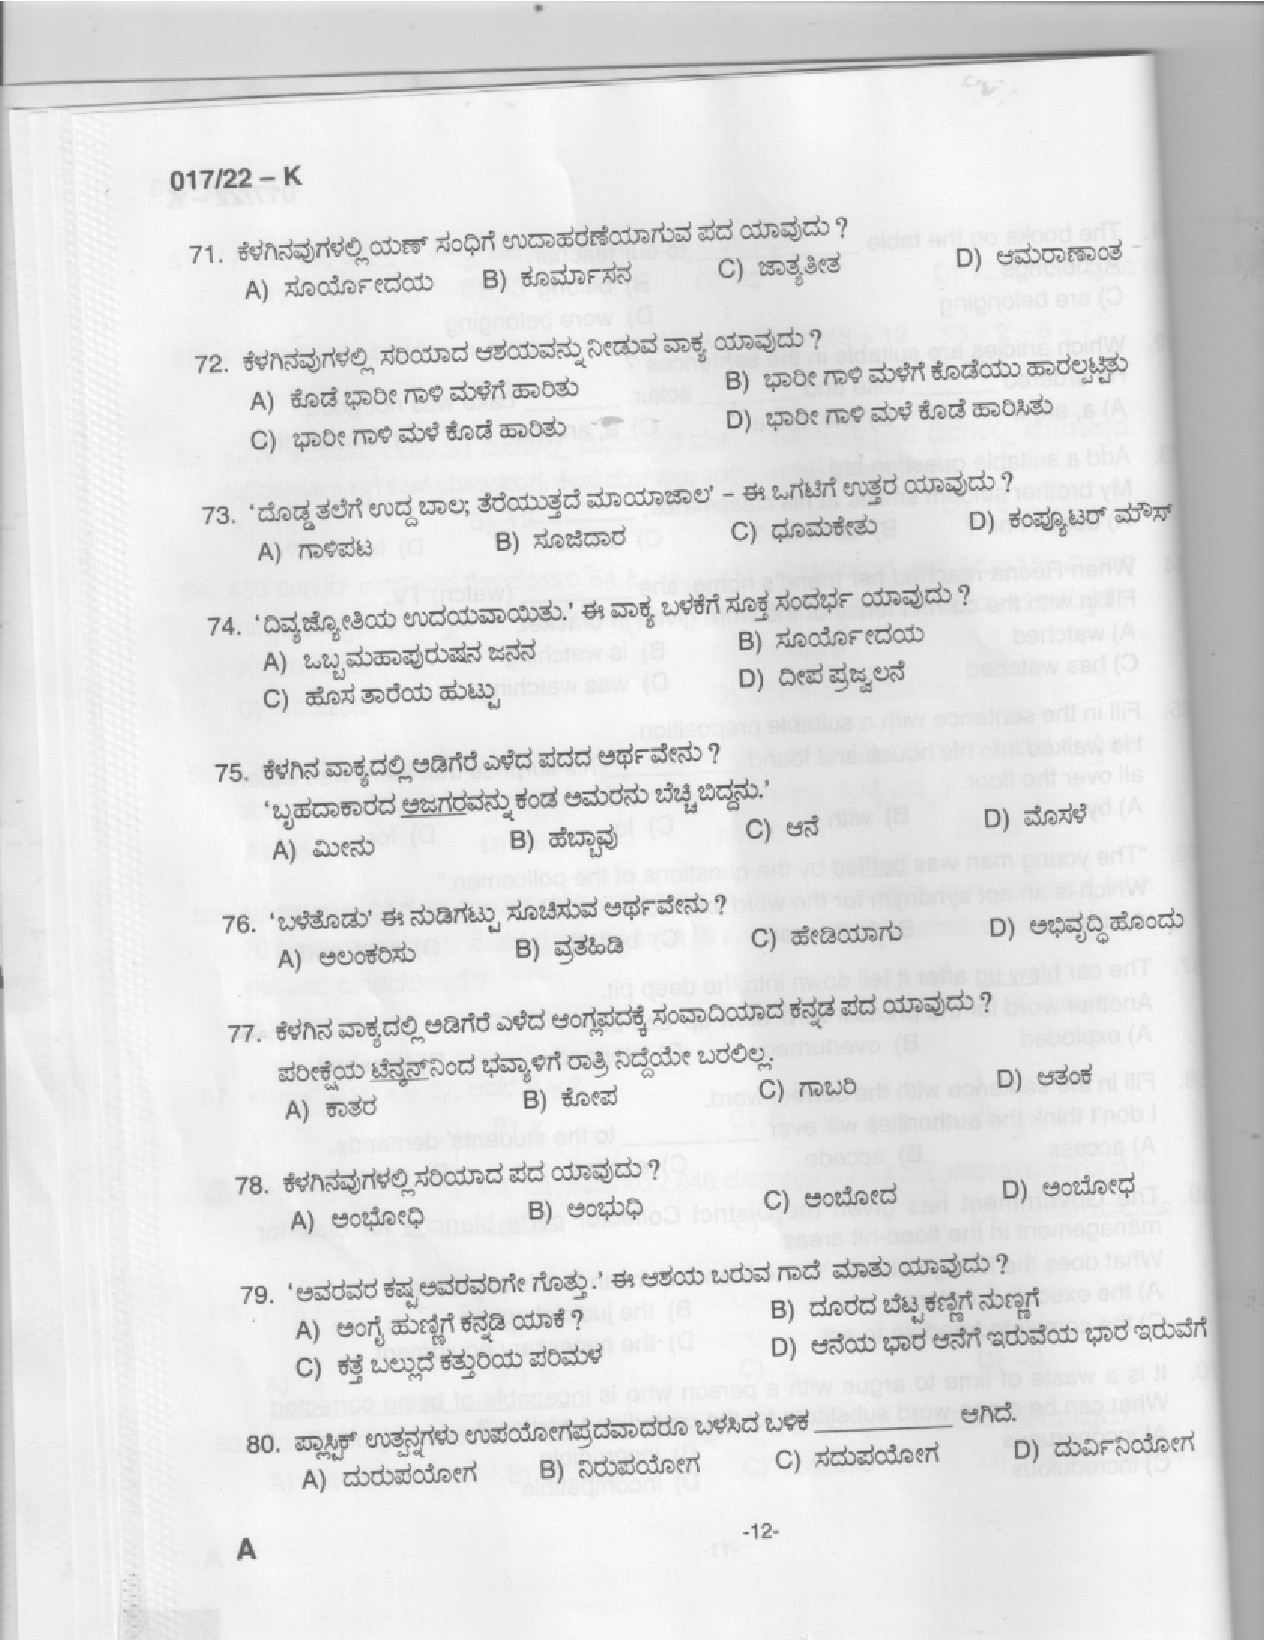 KPSC Police Constable Kannada Exam 2022 Code 0172022 K 10